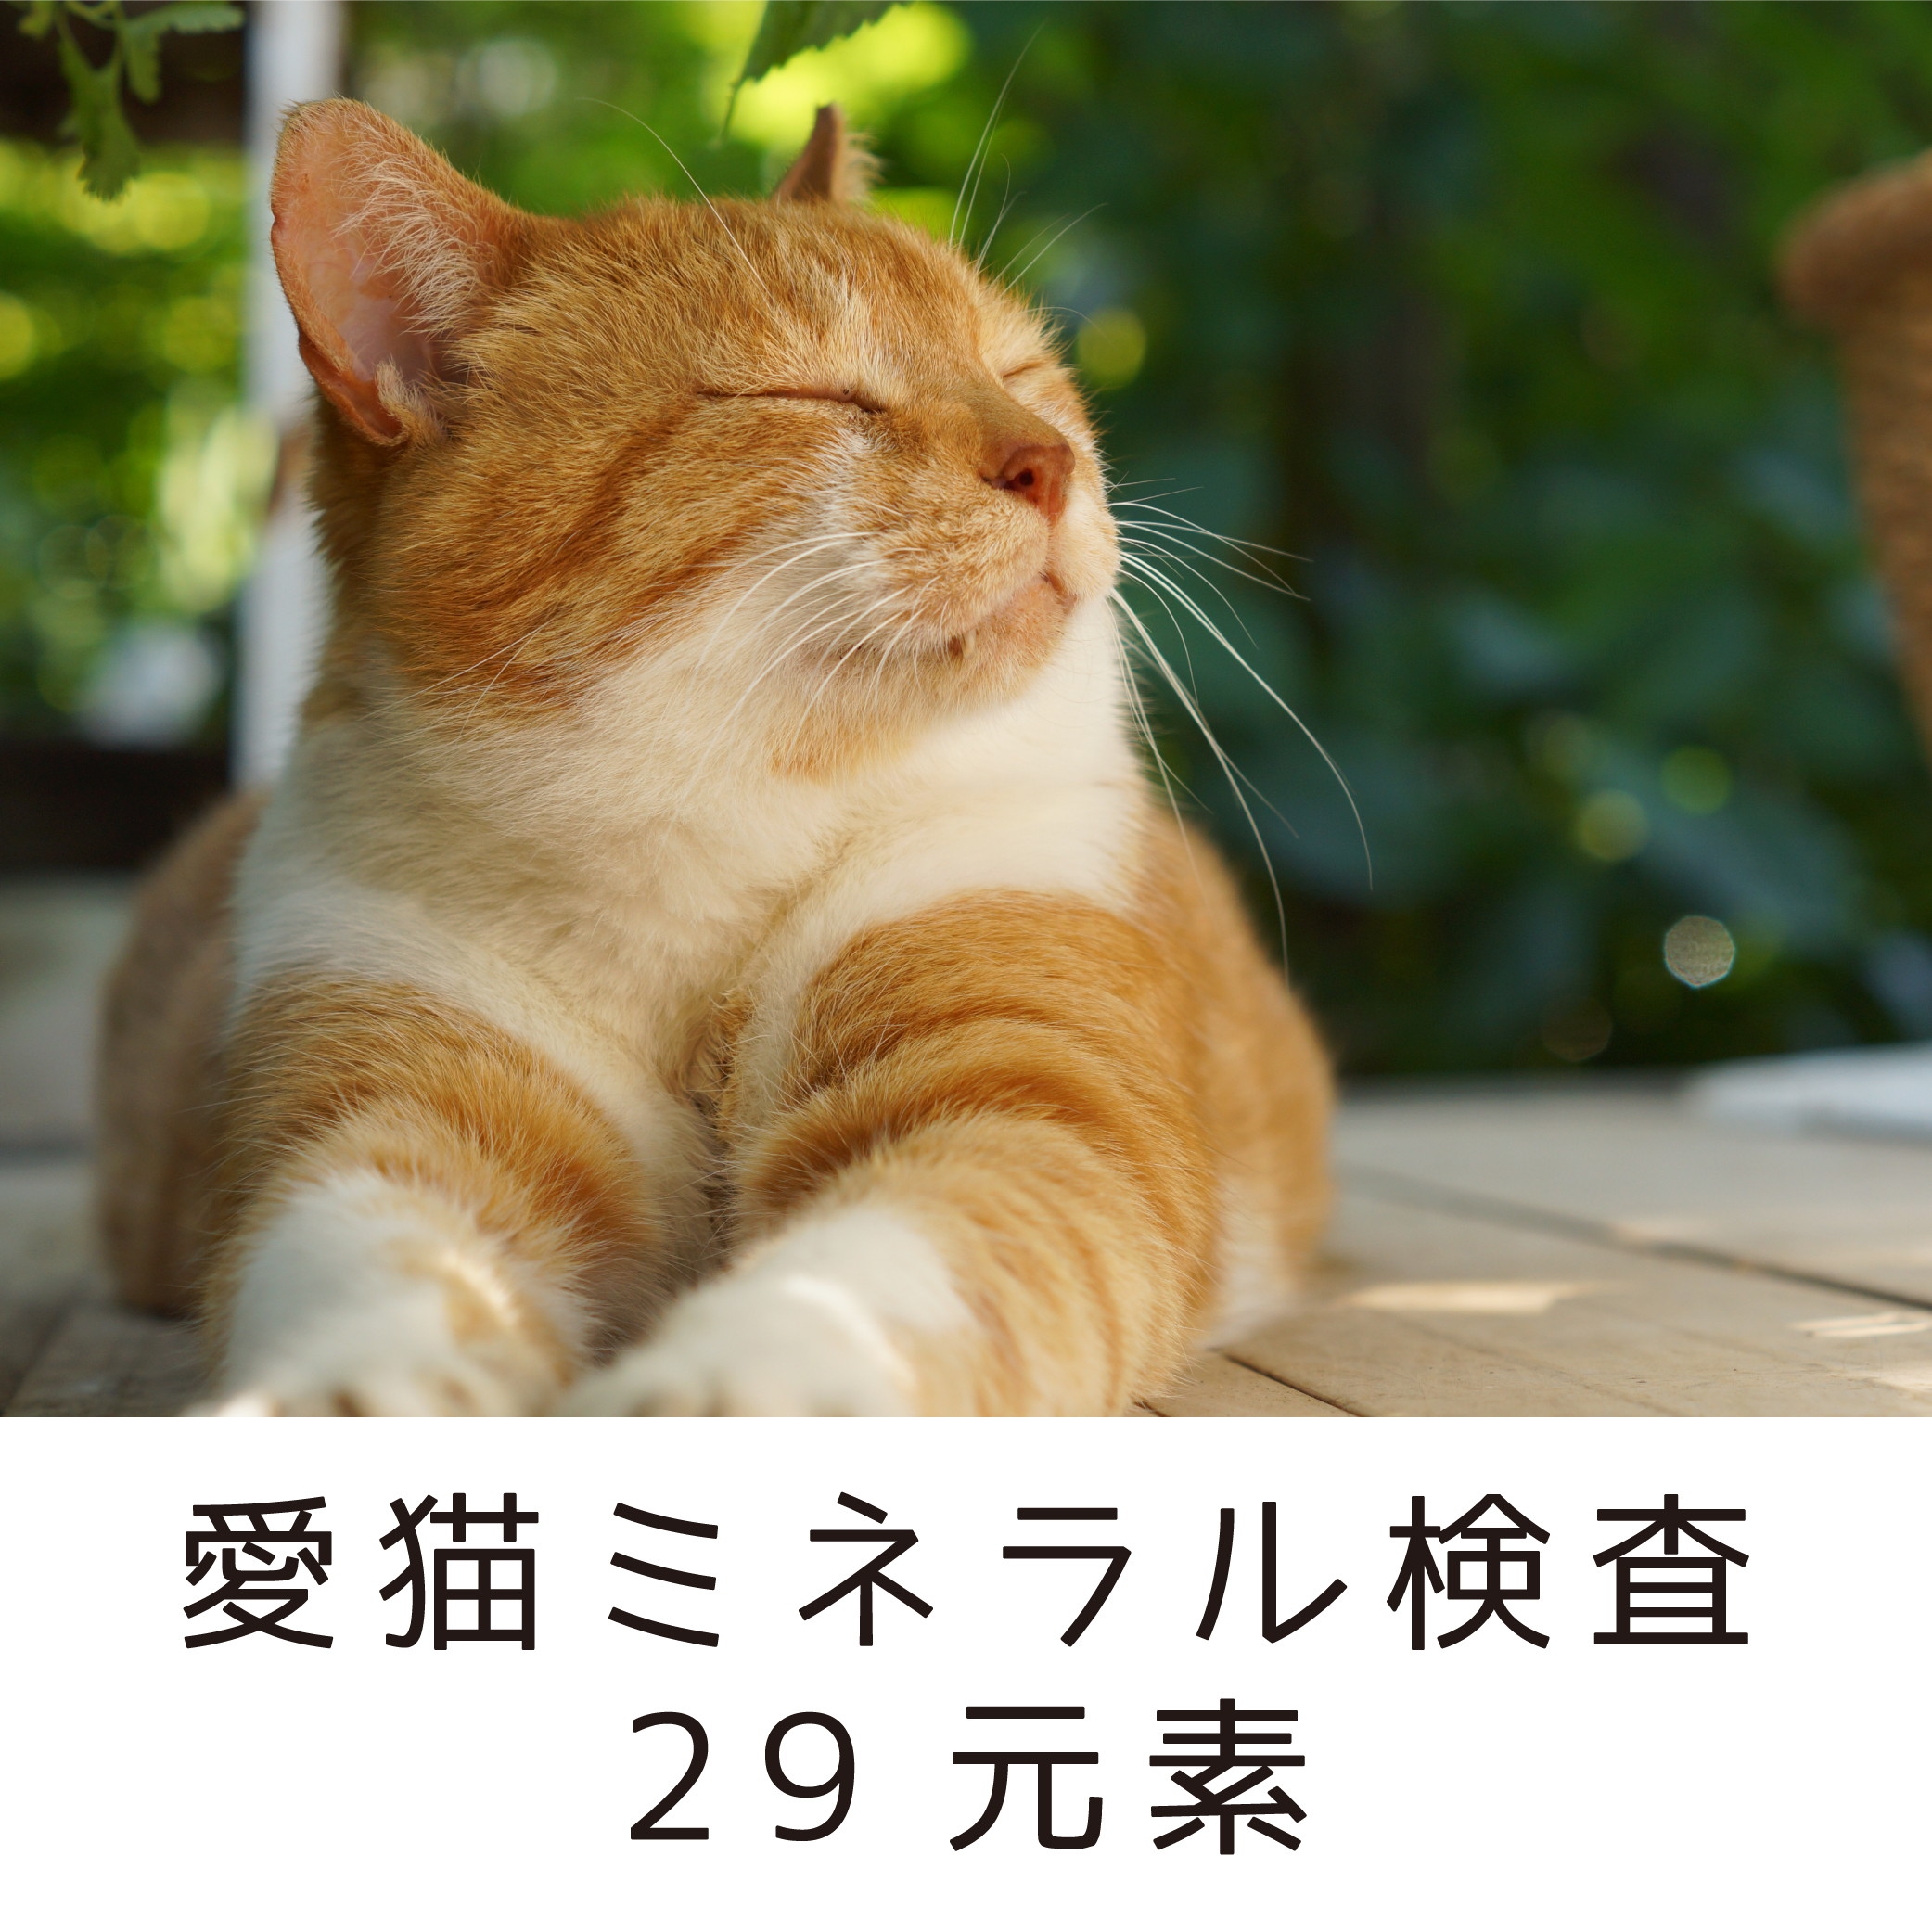 愛猫ミネラル検査29元素